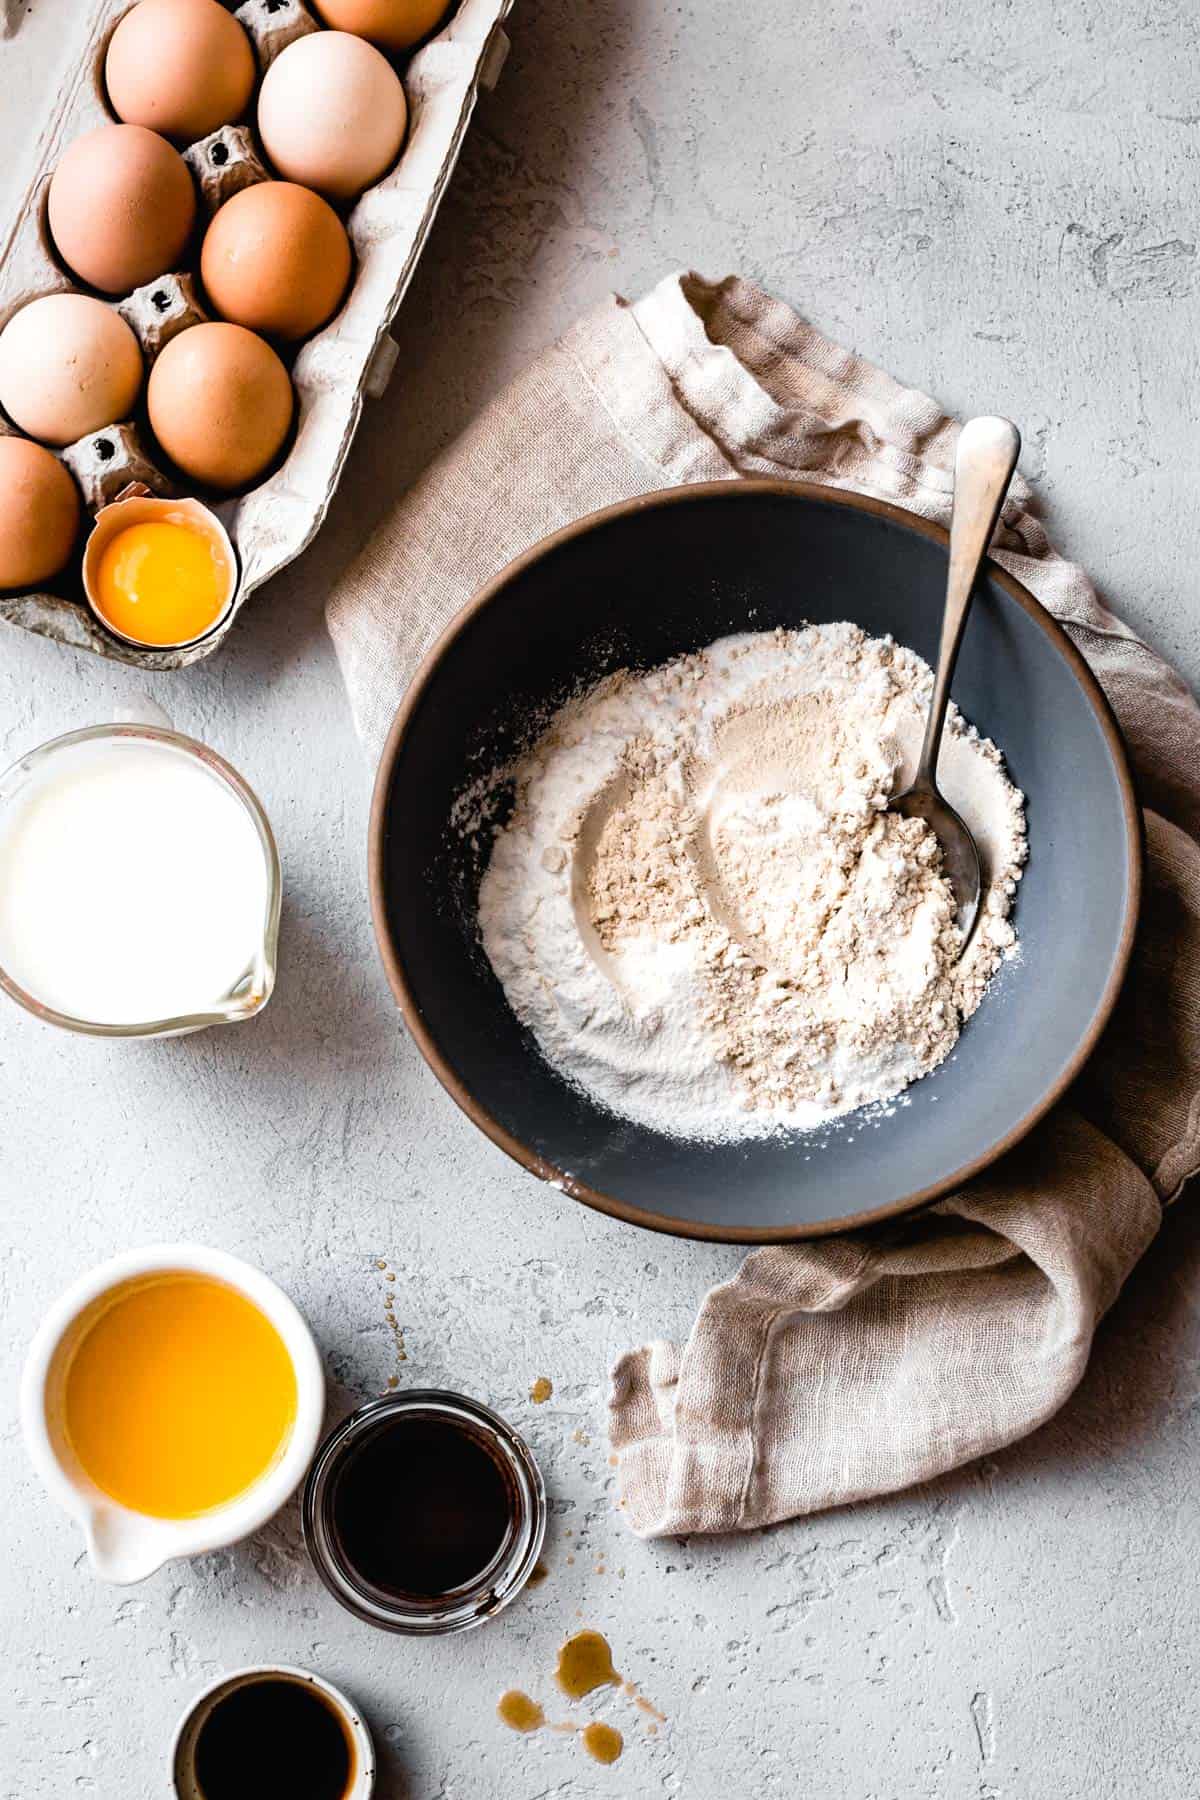 Ingredients for gluten-free pancake mix